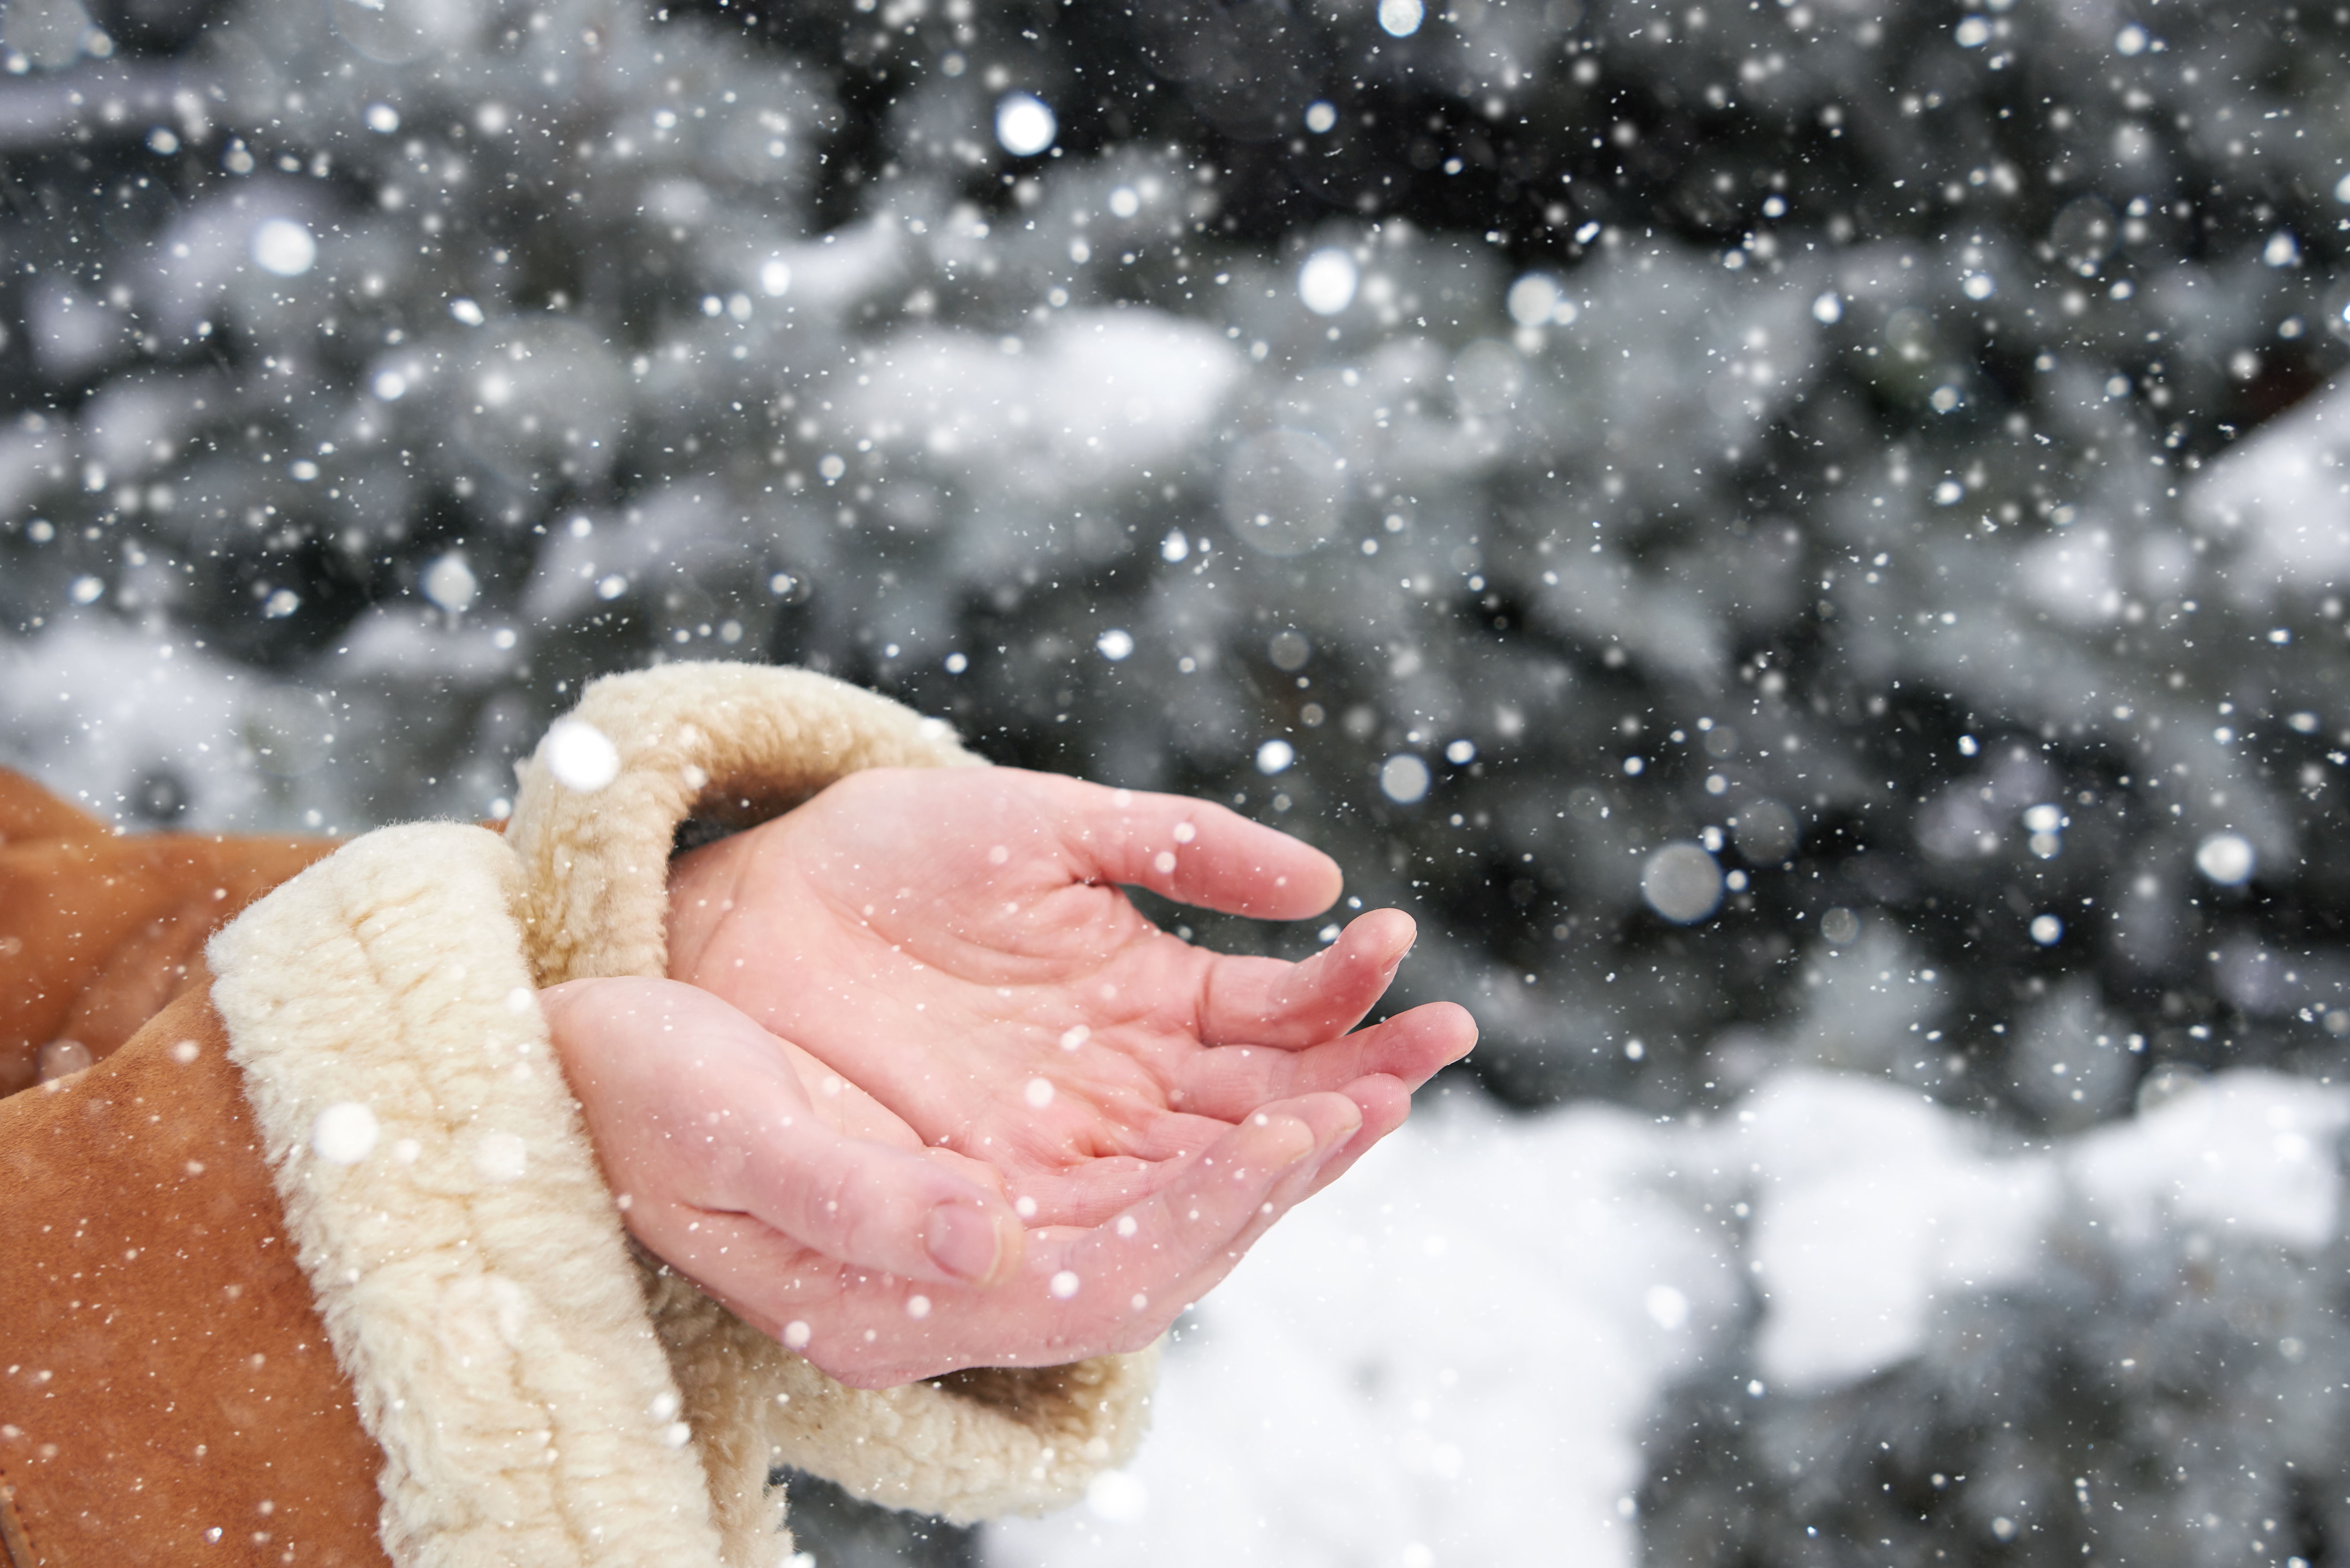 როგორ შევინარჩუნეთ რბილი და გლუვი ხელები ზამთრის ცივ დღეებში?